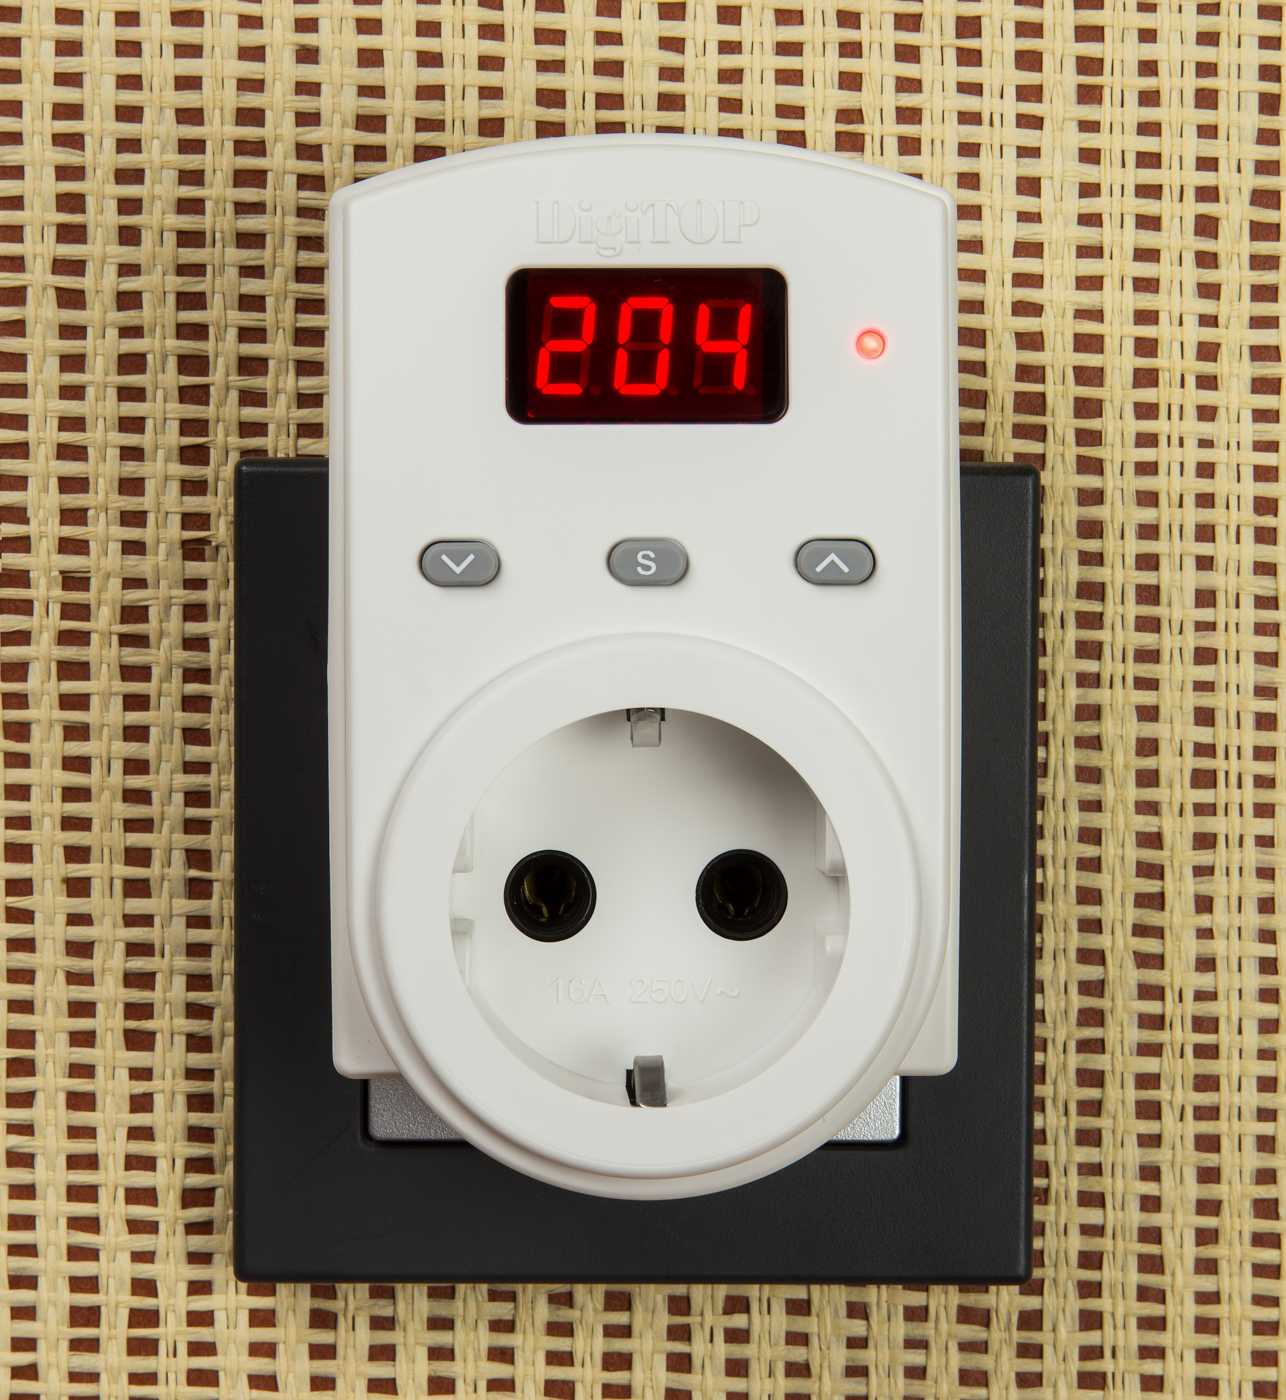 Защита сети 220 вольт от перенапряжения — как защитить электроприборы в вашем доме?